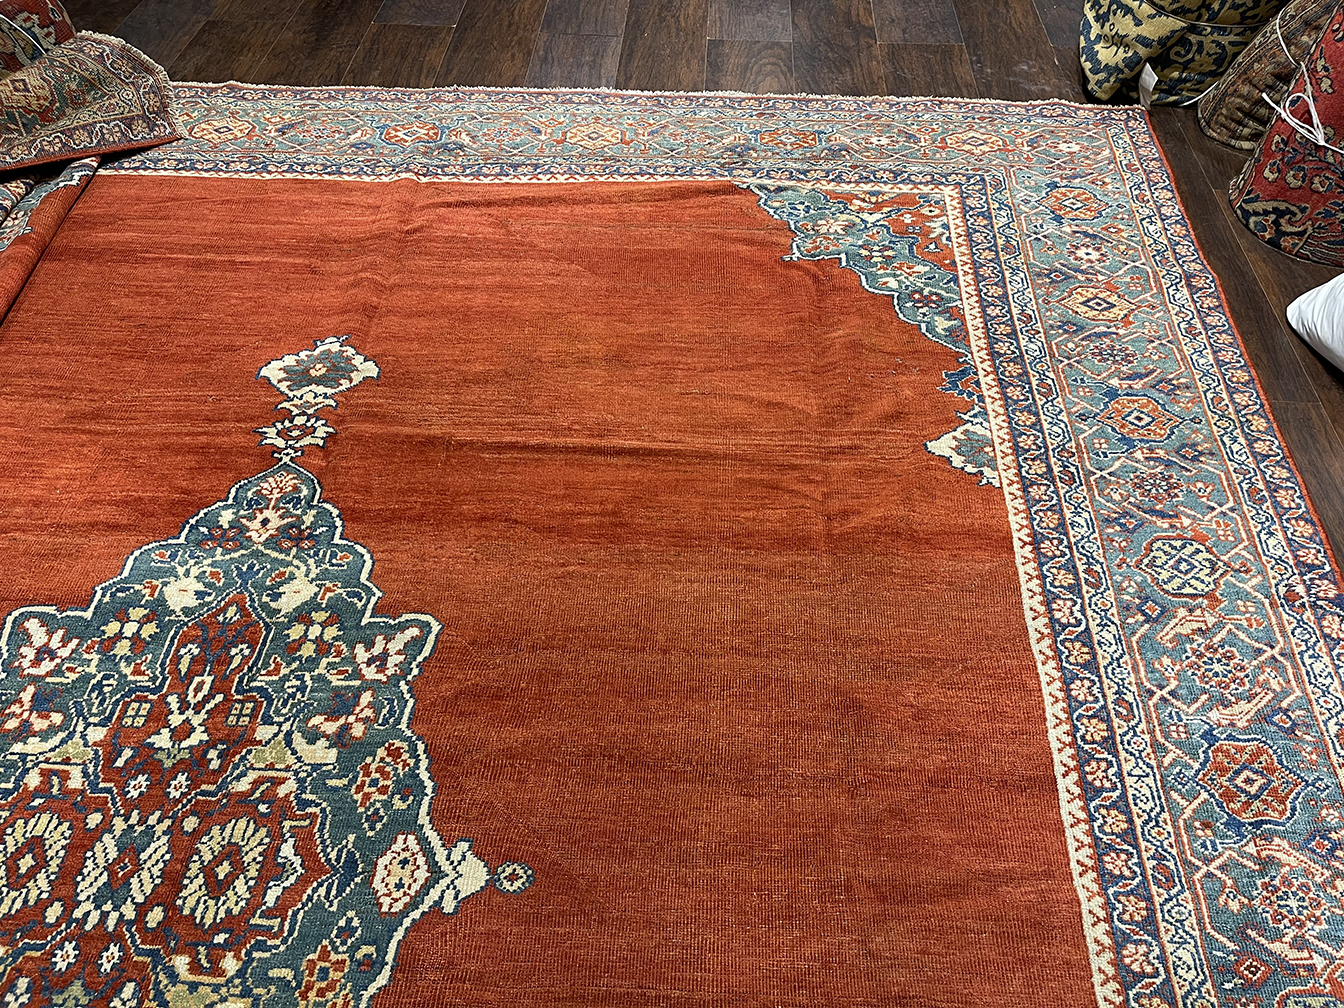 Antique sultan abad Carpet - # 56457